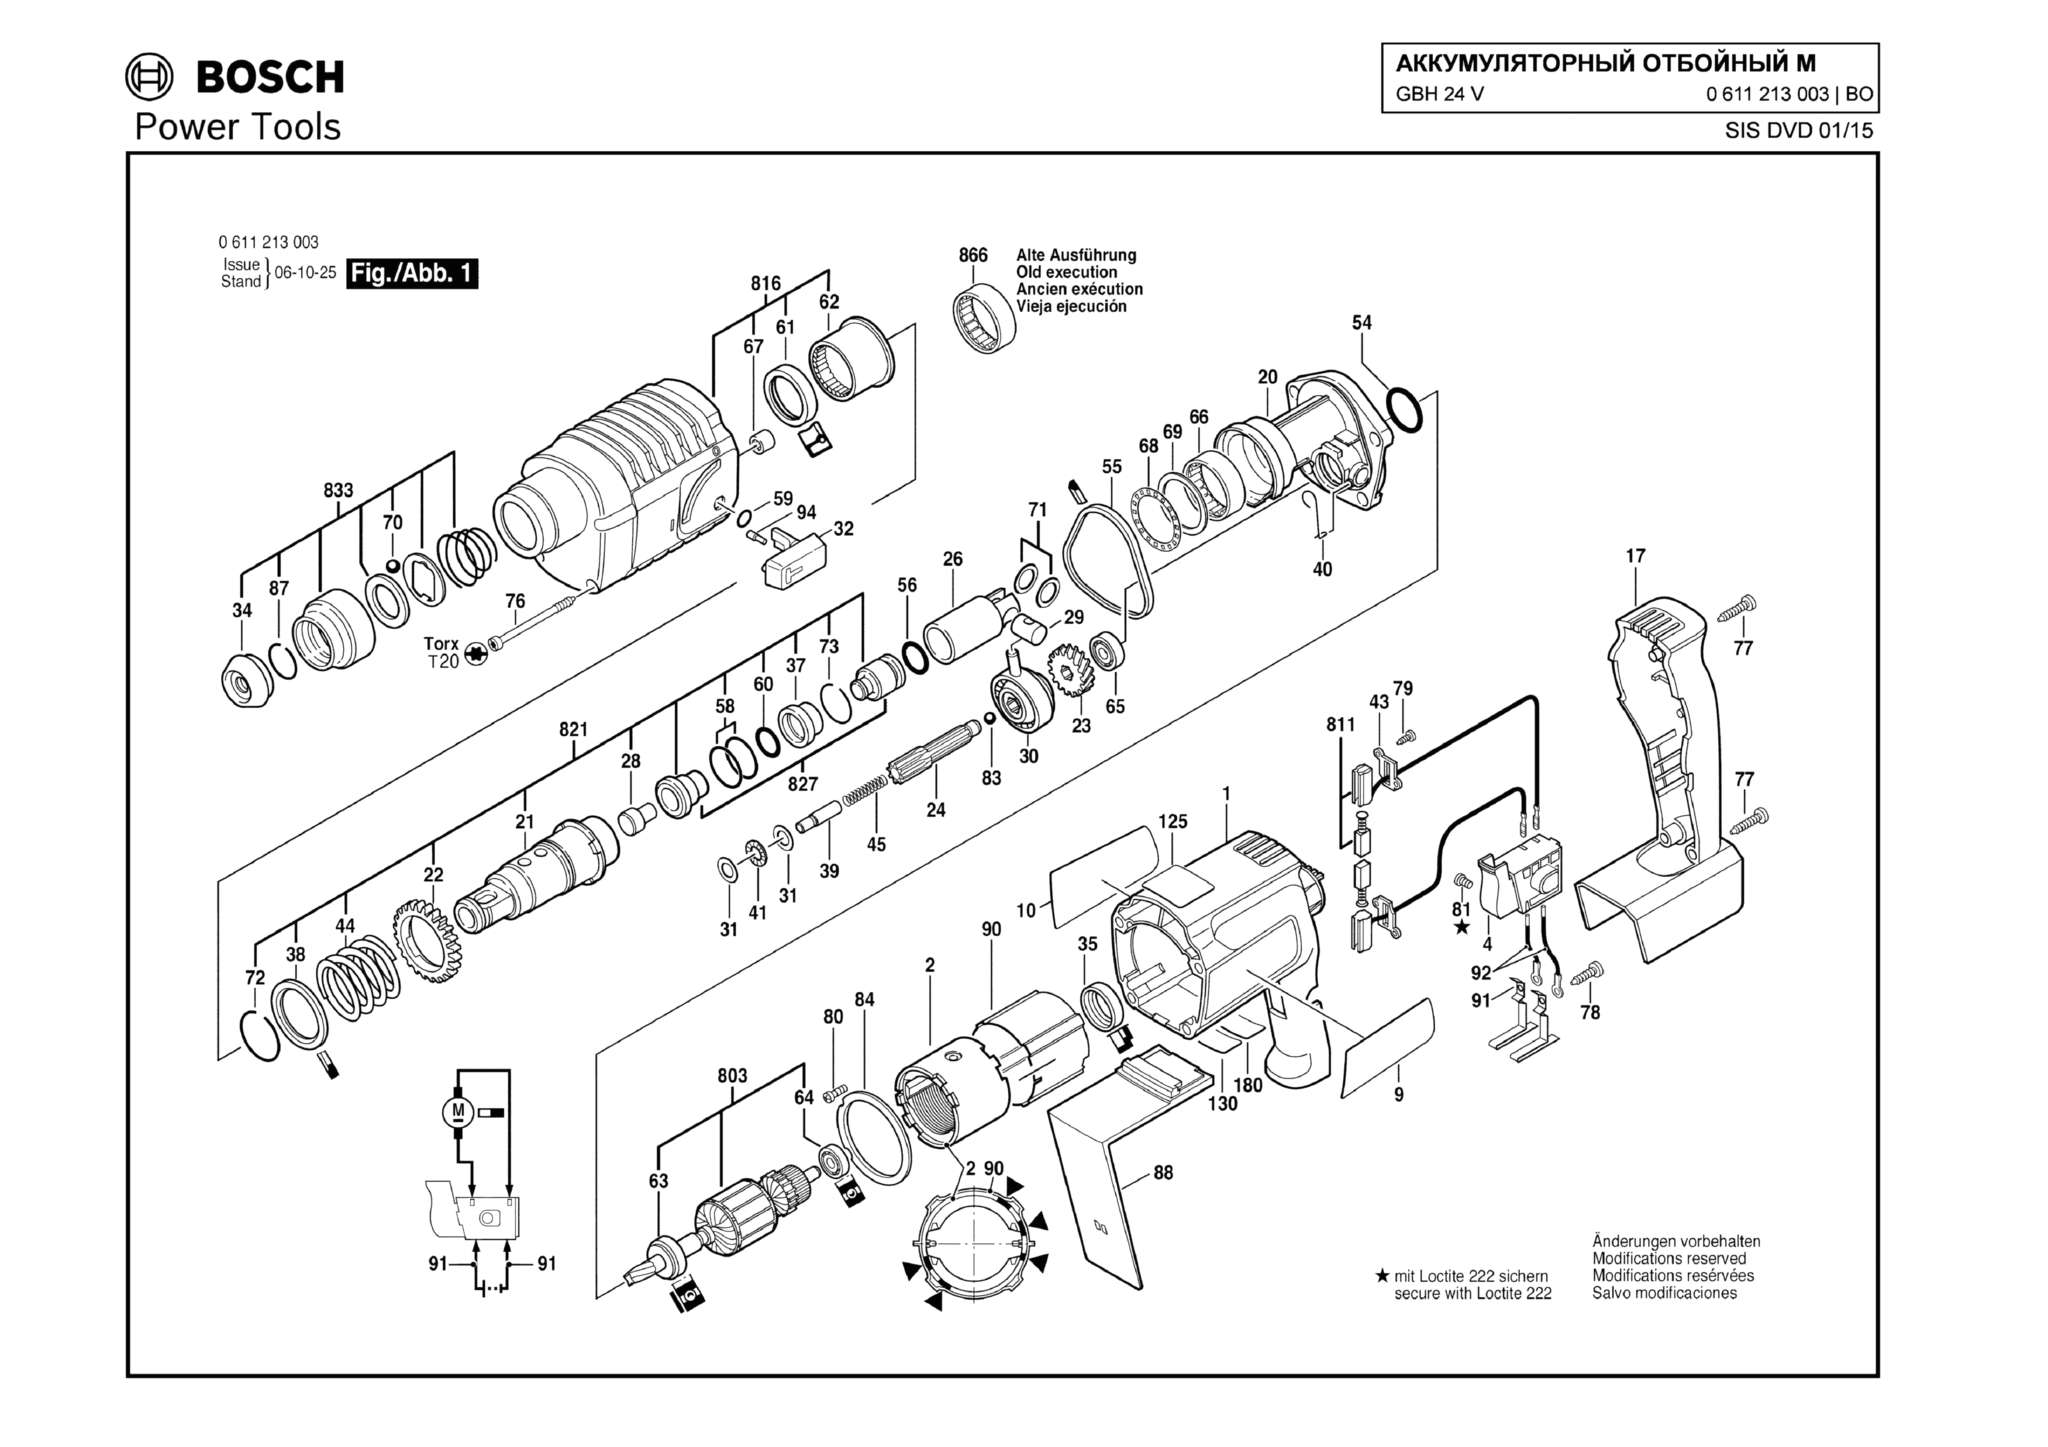 Запчасти, схема и деталировка Bosch GBH 24 V (ТИП 0611213003) (ЧАСТЬ 1)